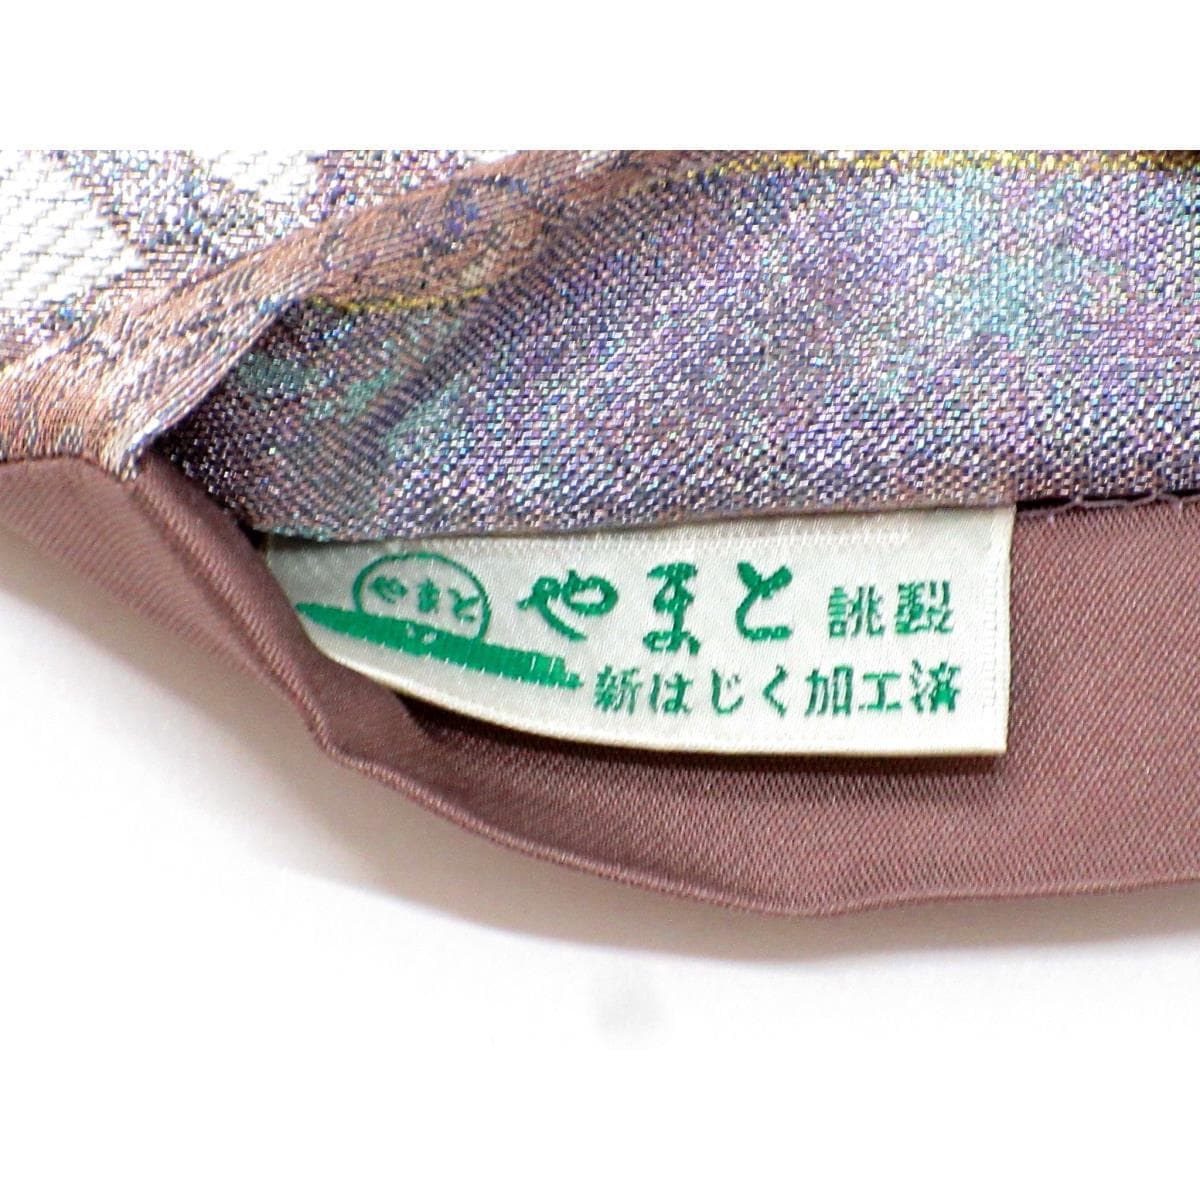 [Unused items] Bag belt